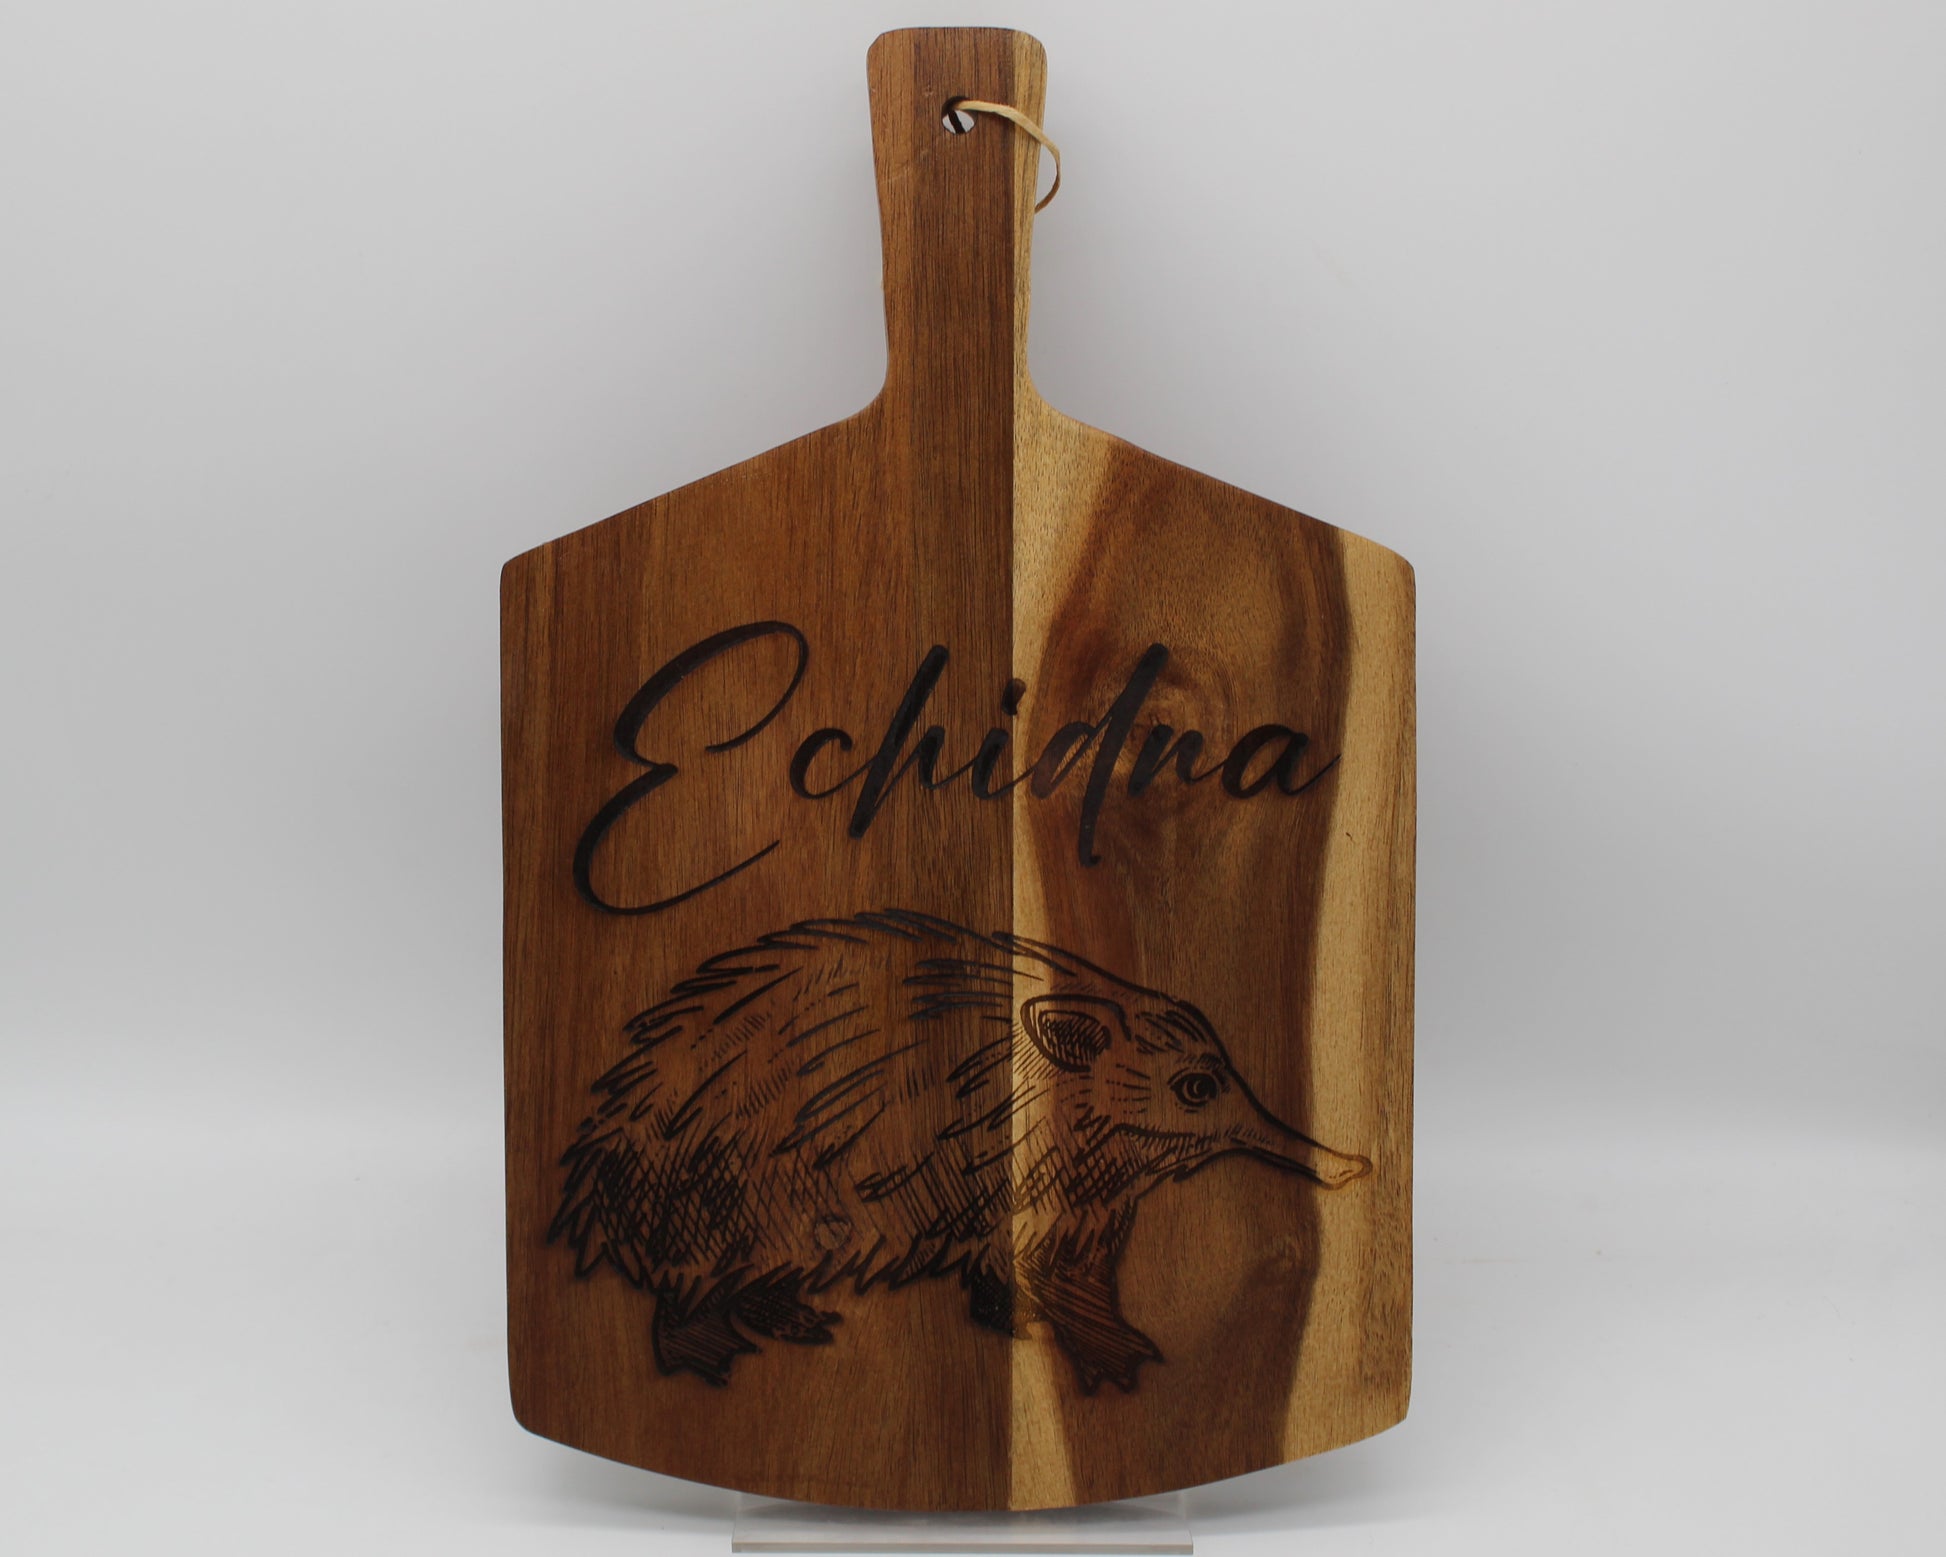 Echidna chopping board - haisley design